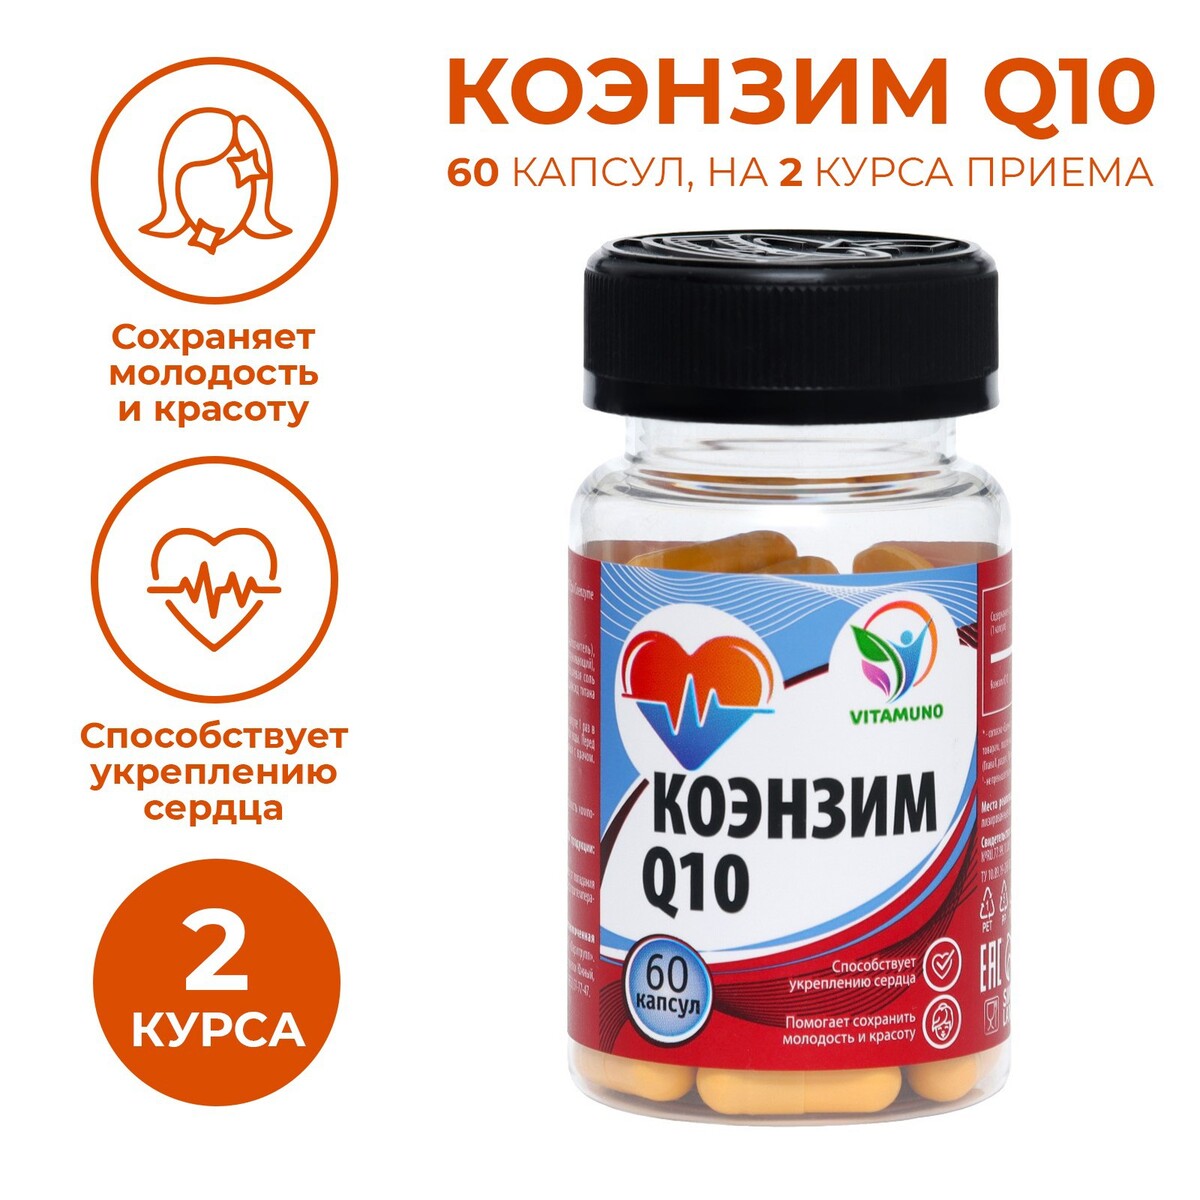 Коэнзим q10, 60 капсул по 0,5 г Vitamuno